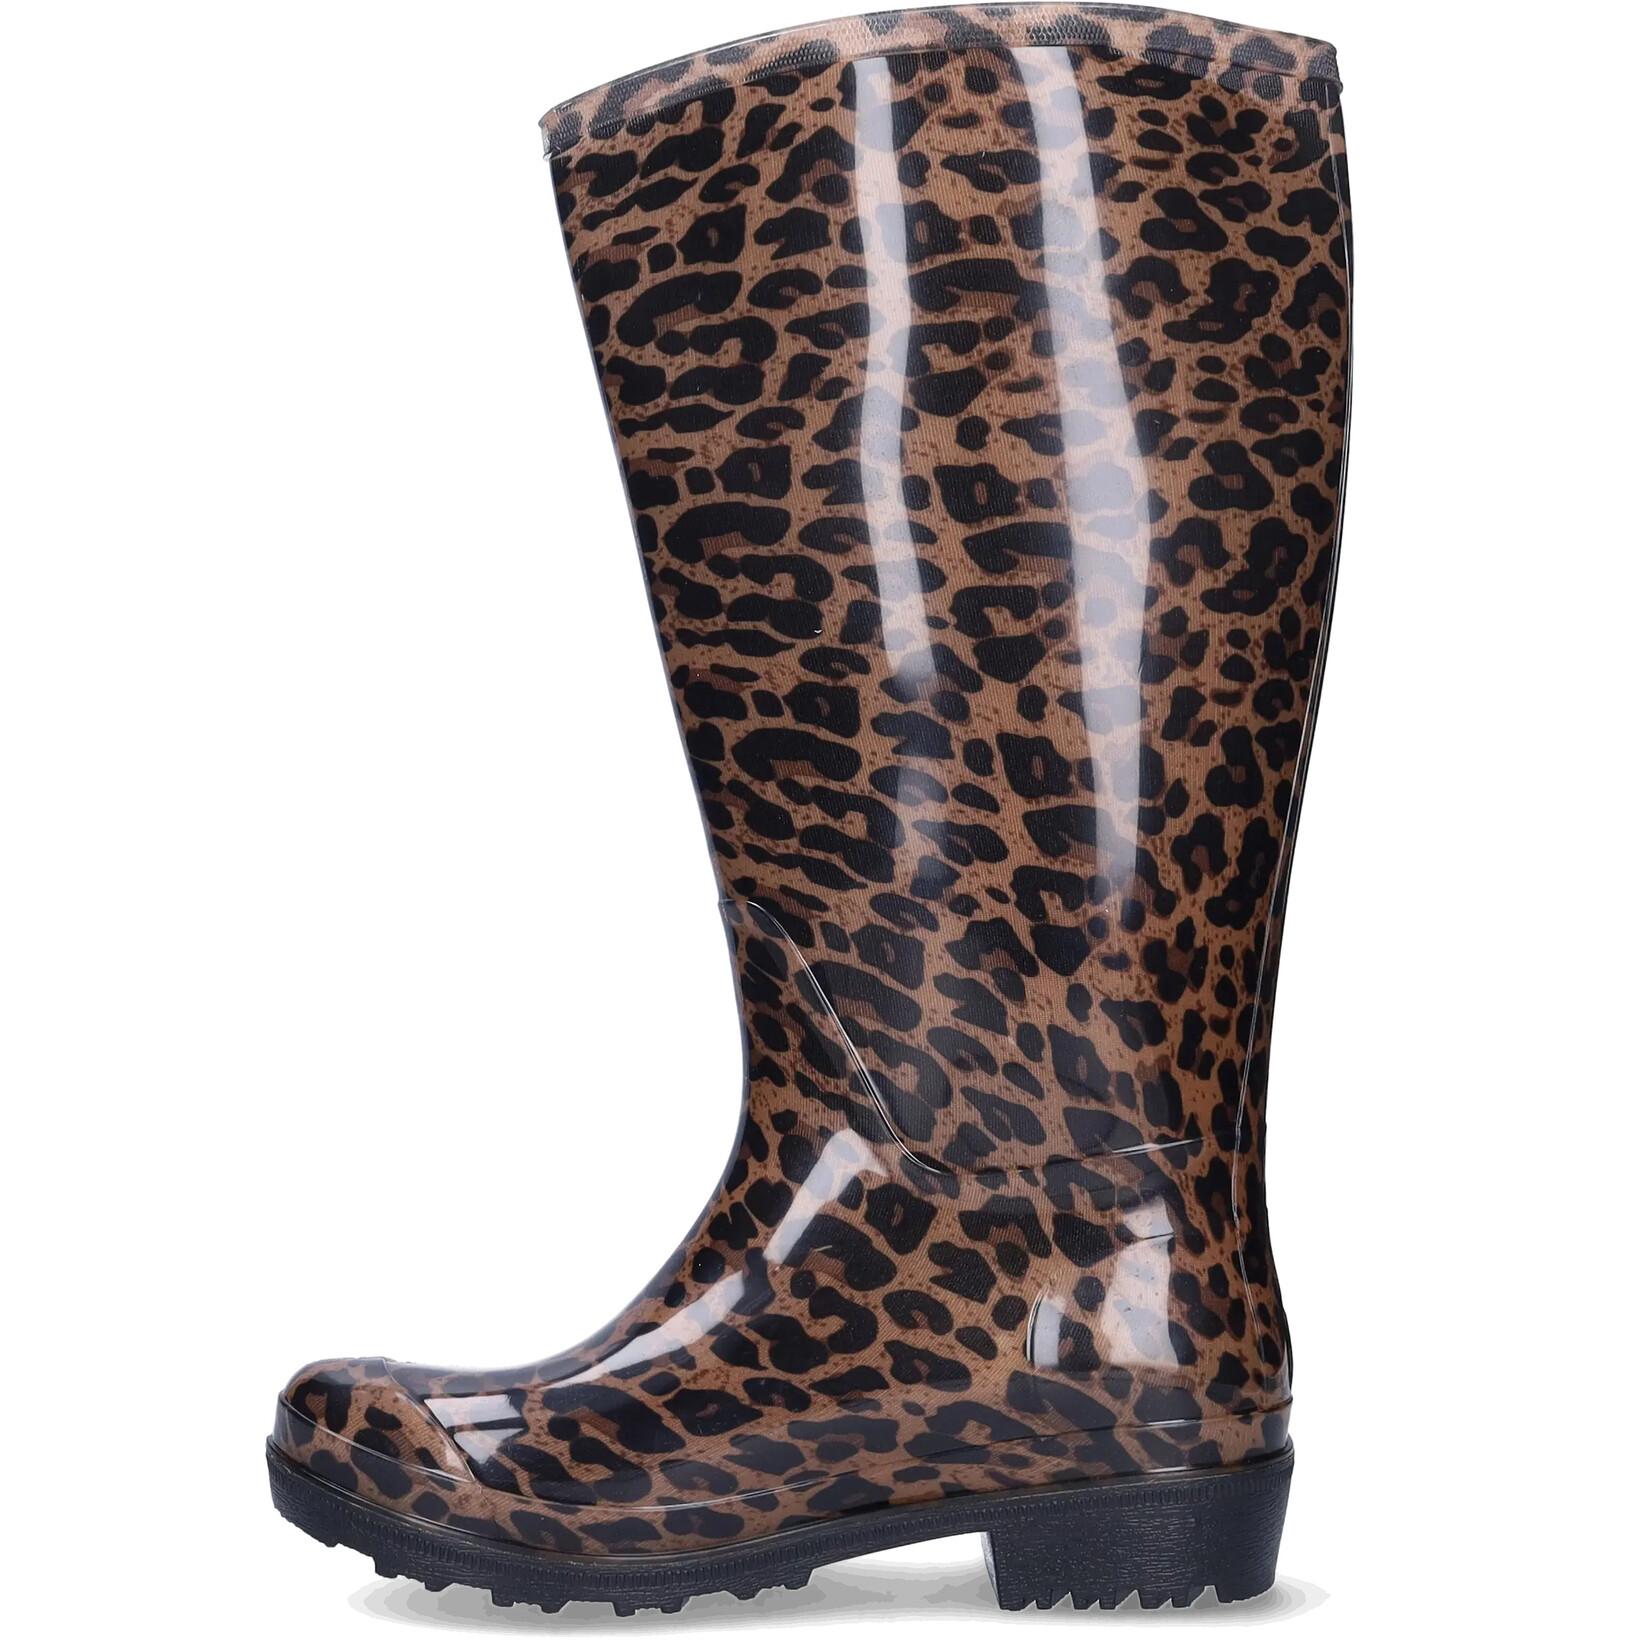 JJ Footwear Wellies - Bruin/Beige Leopard